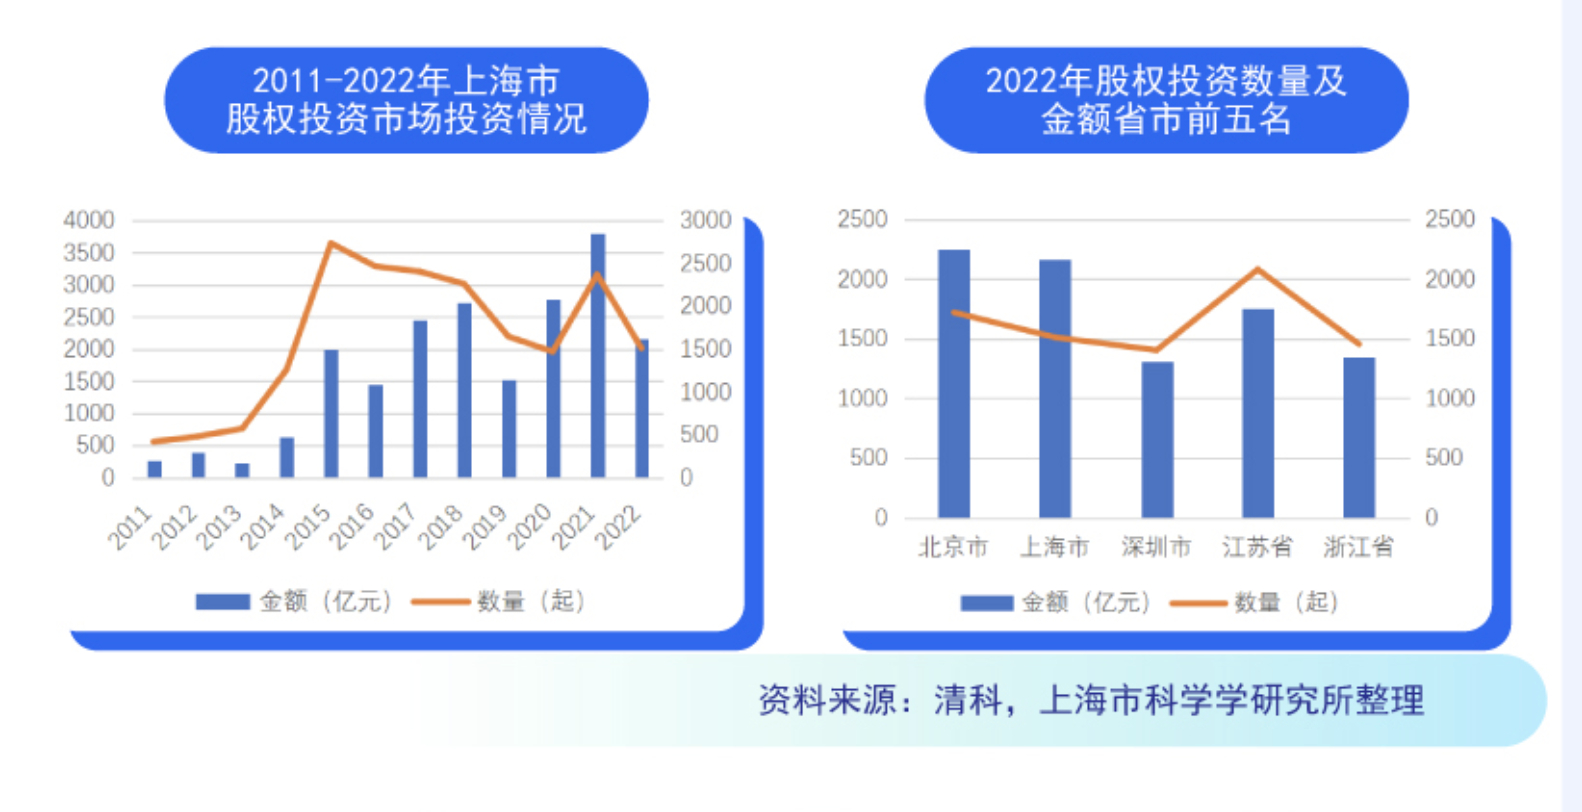 上海股权投资规模仅次于北京: 硬科技投资凸显，早期占比较低